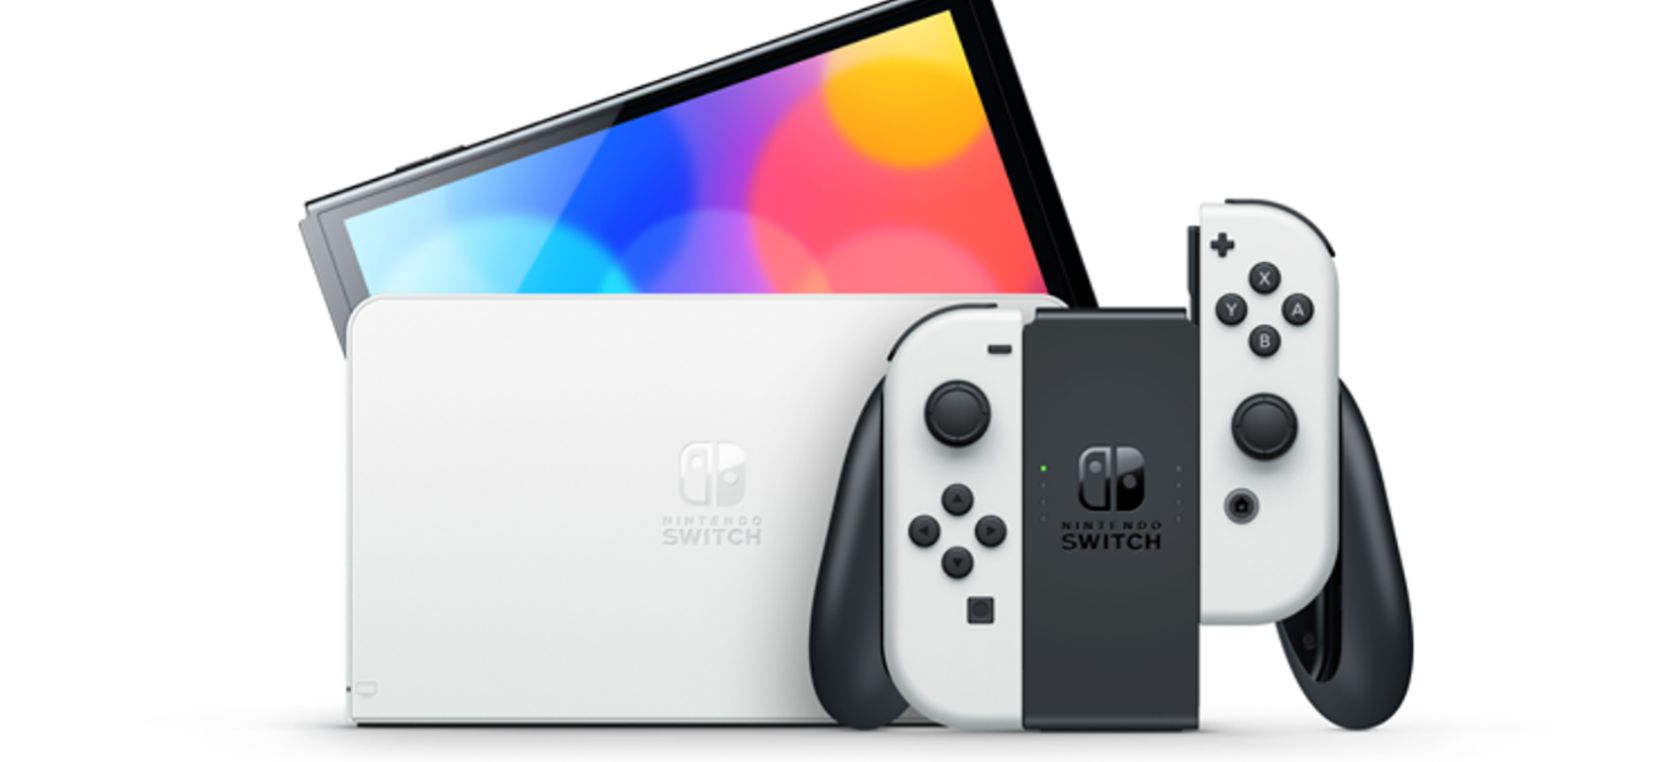 Nintendo presenta una nueva Switch con pantalla ‘Oled’